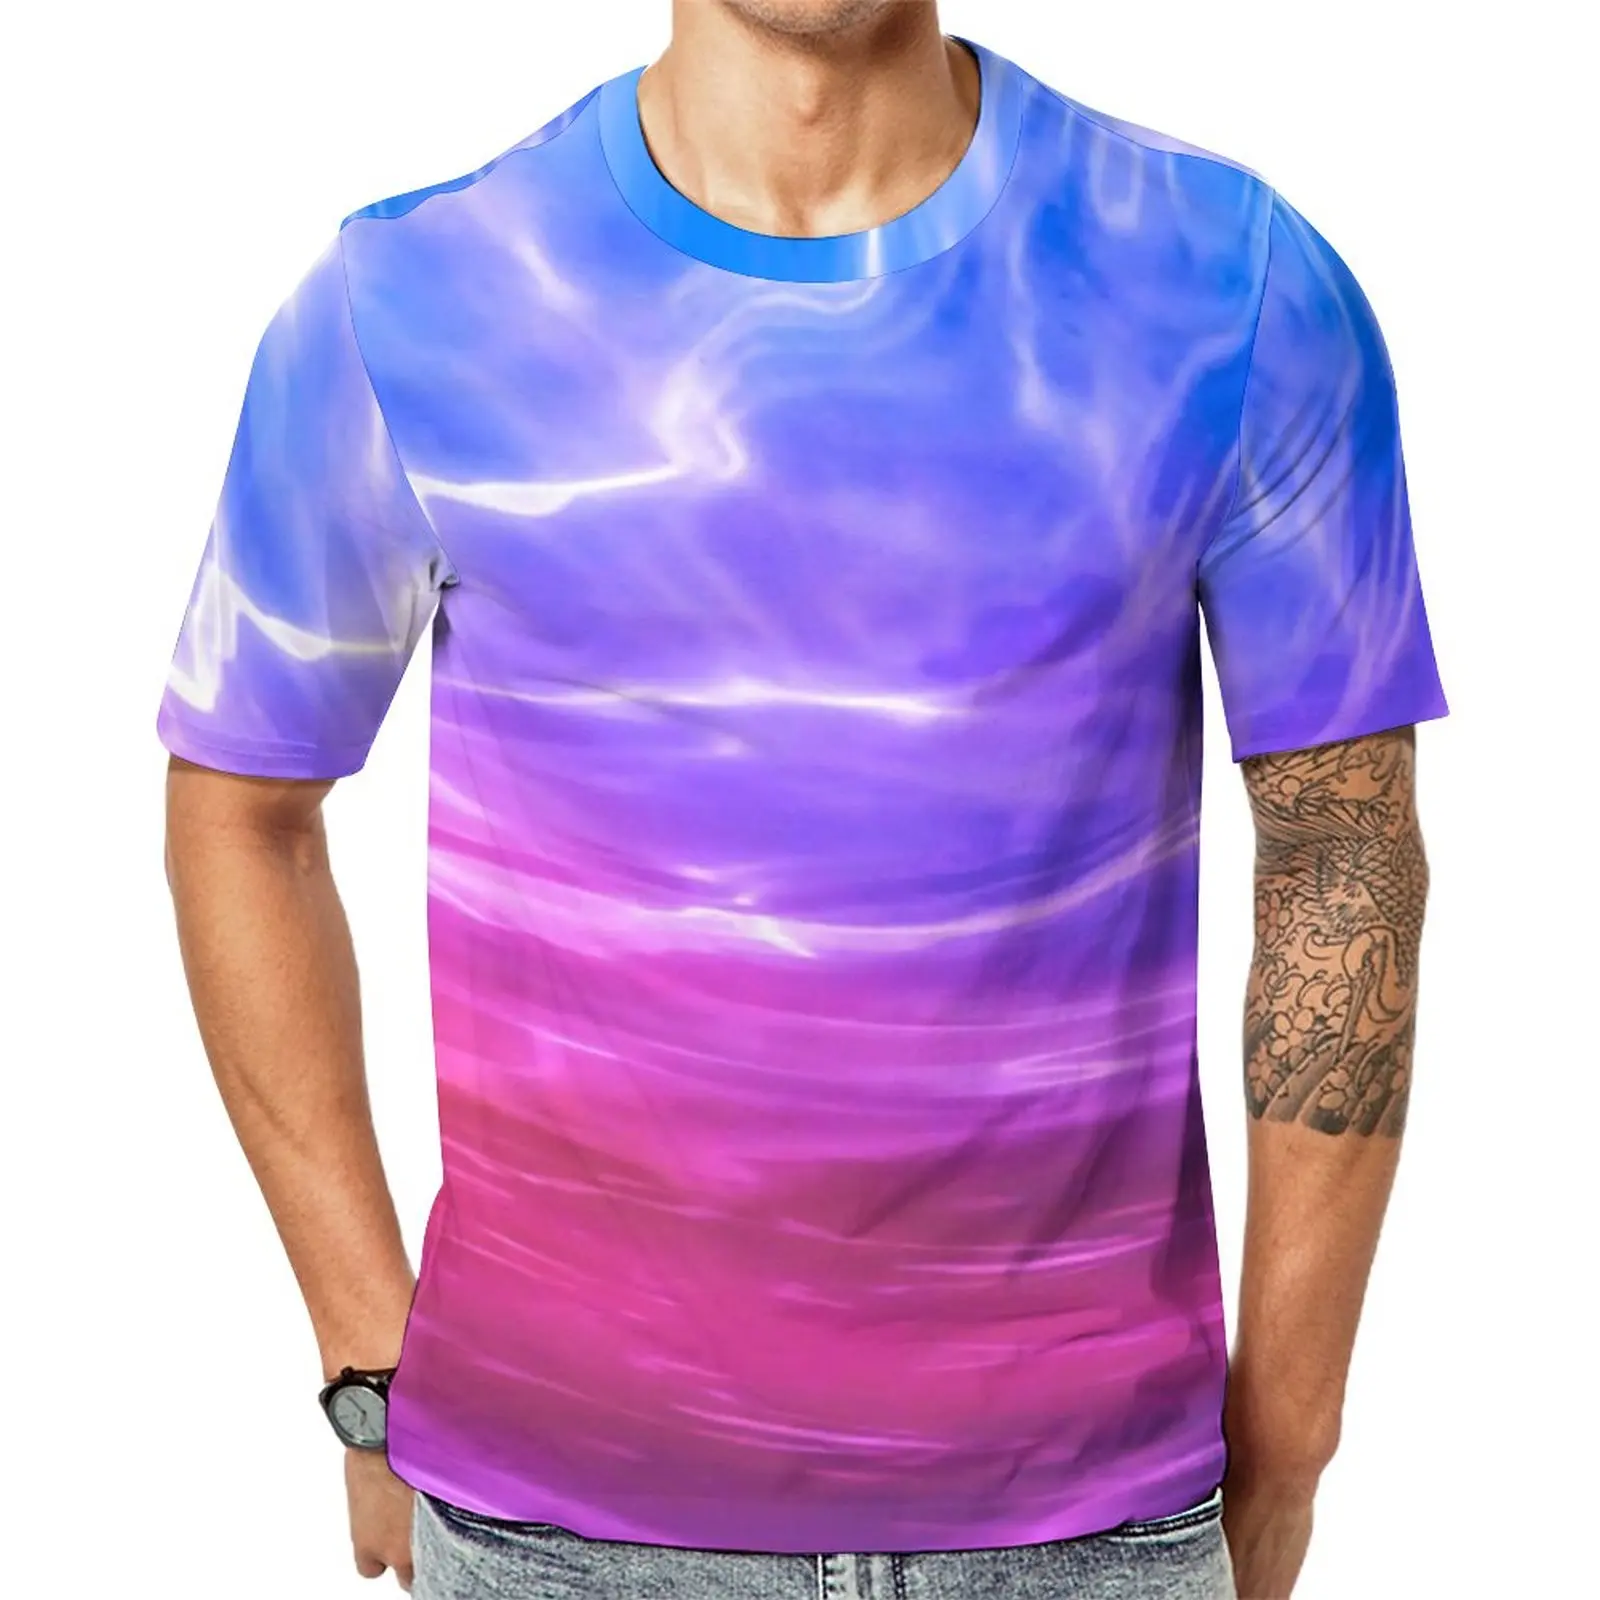 

Синяя, розовая, фиолетовая футболка с жидкостью, мужские футболки с абстрактным рисунком в стиле хиппи, Оригинальная футболка с графическим рисунком, Забавные топы большого размера с коротким рукавом